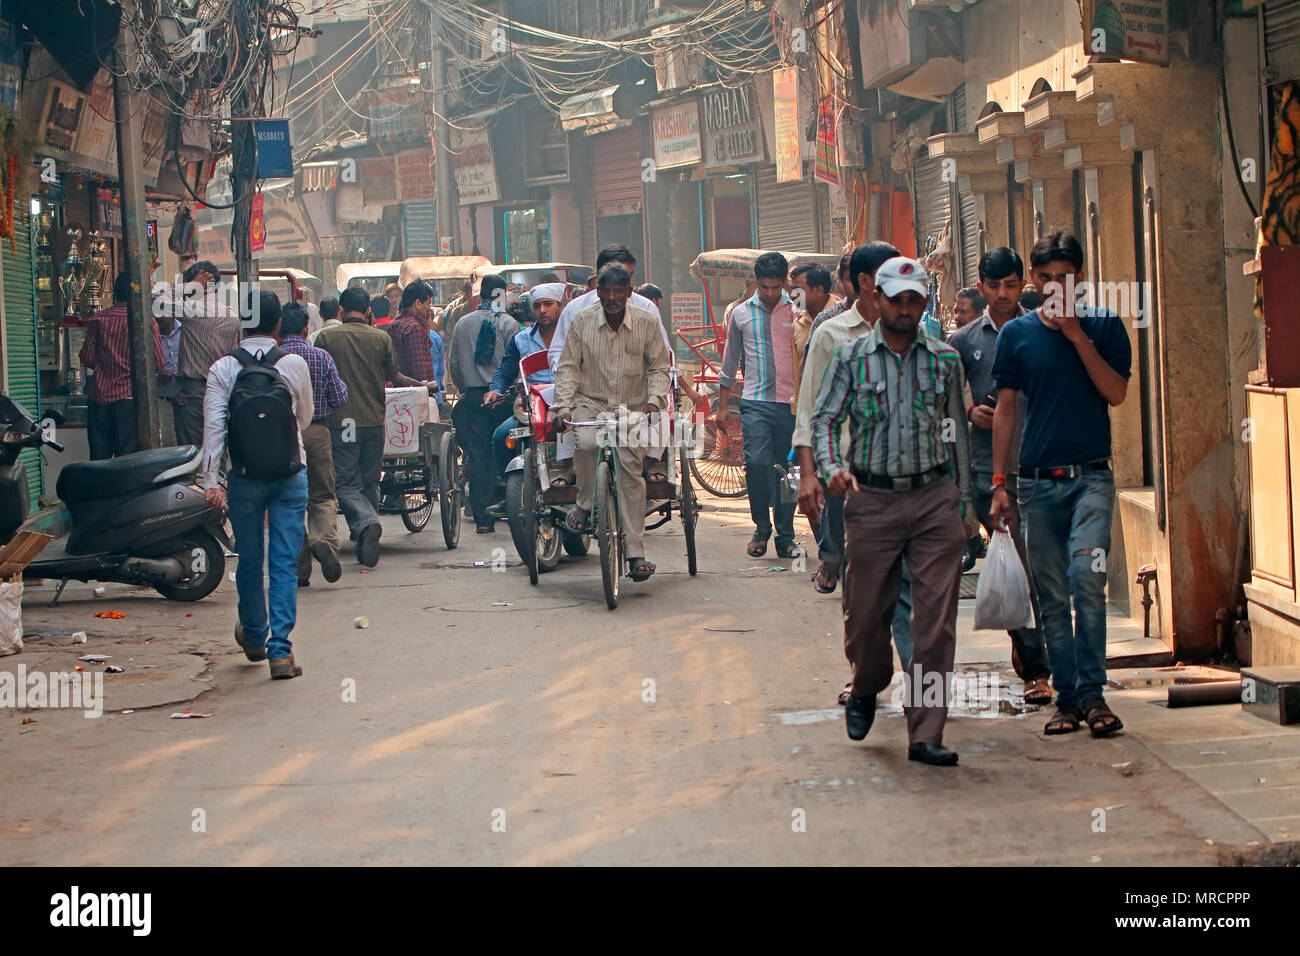 Delhi, Indien - 20. November 2015: überfüllten Straße mit Geschäften in Old Delhi mit Menschen vollgestopft mit ihren täglichen Aktivitäten besetzt Stockfoto